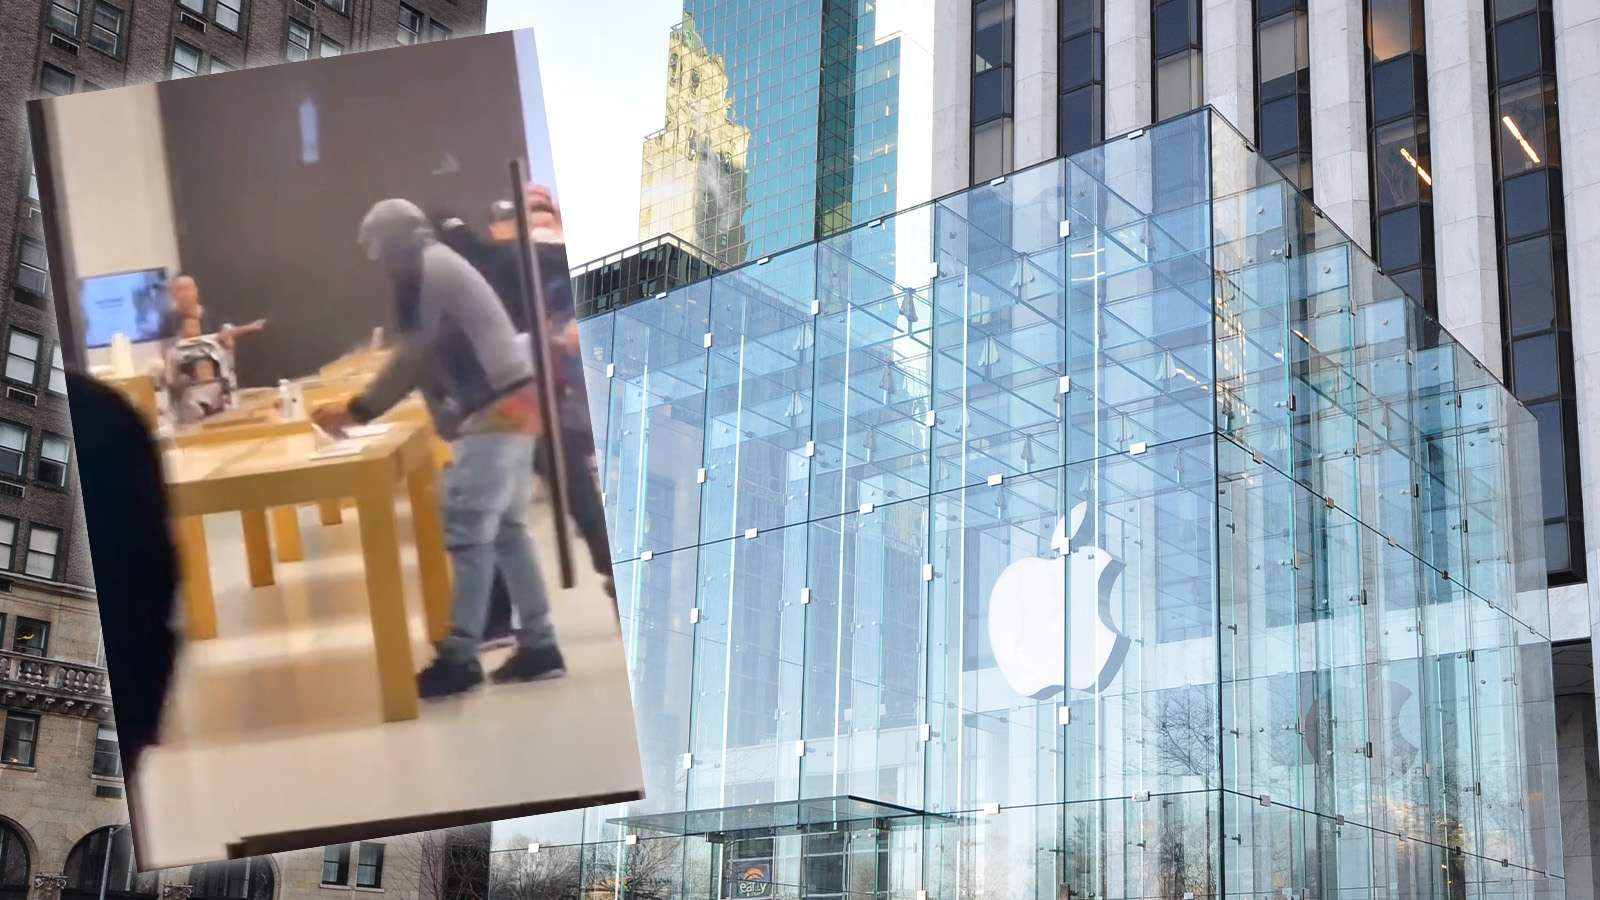 Apple Store TikTok robbery